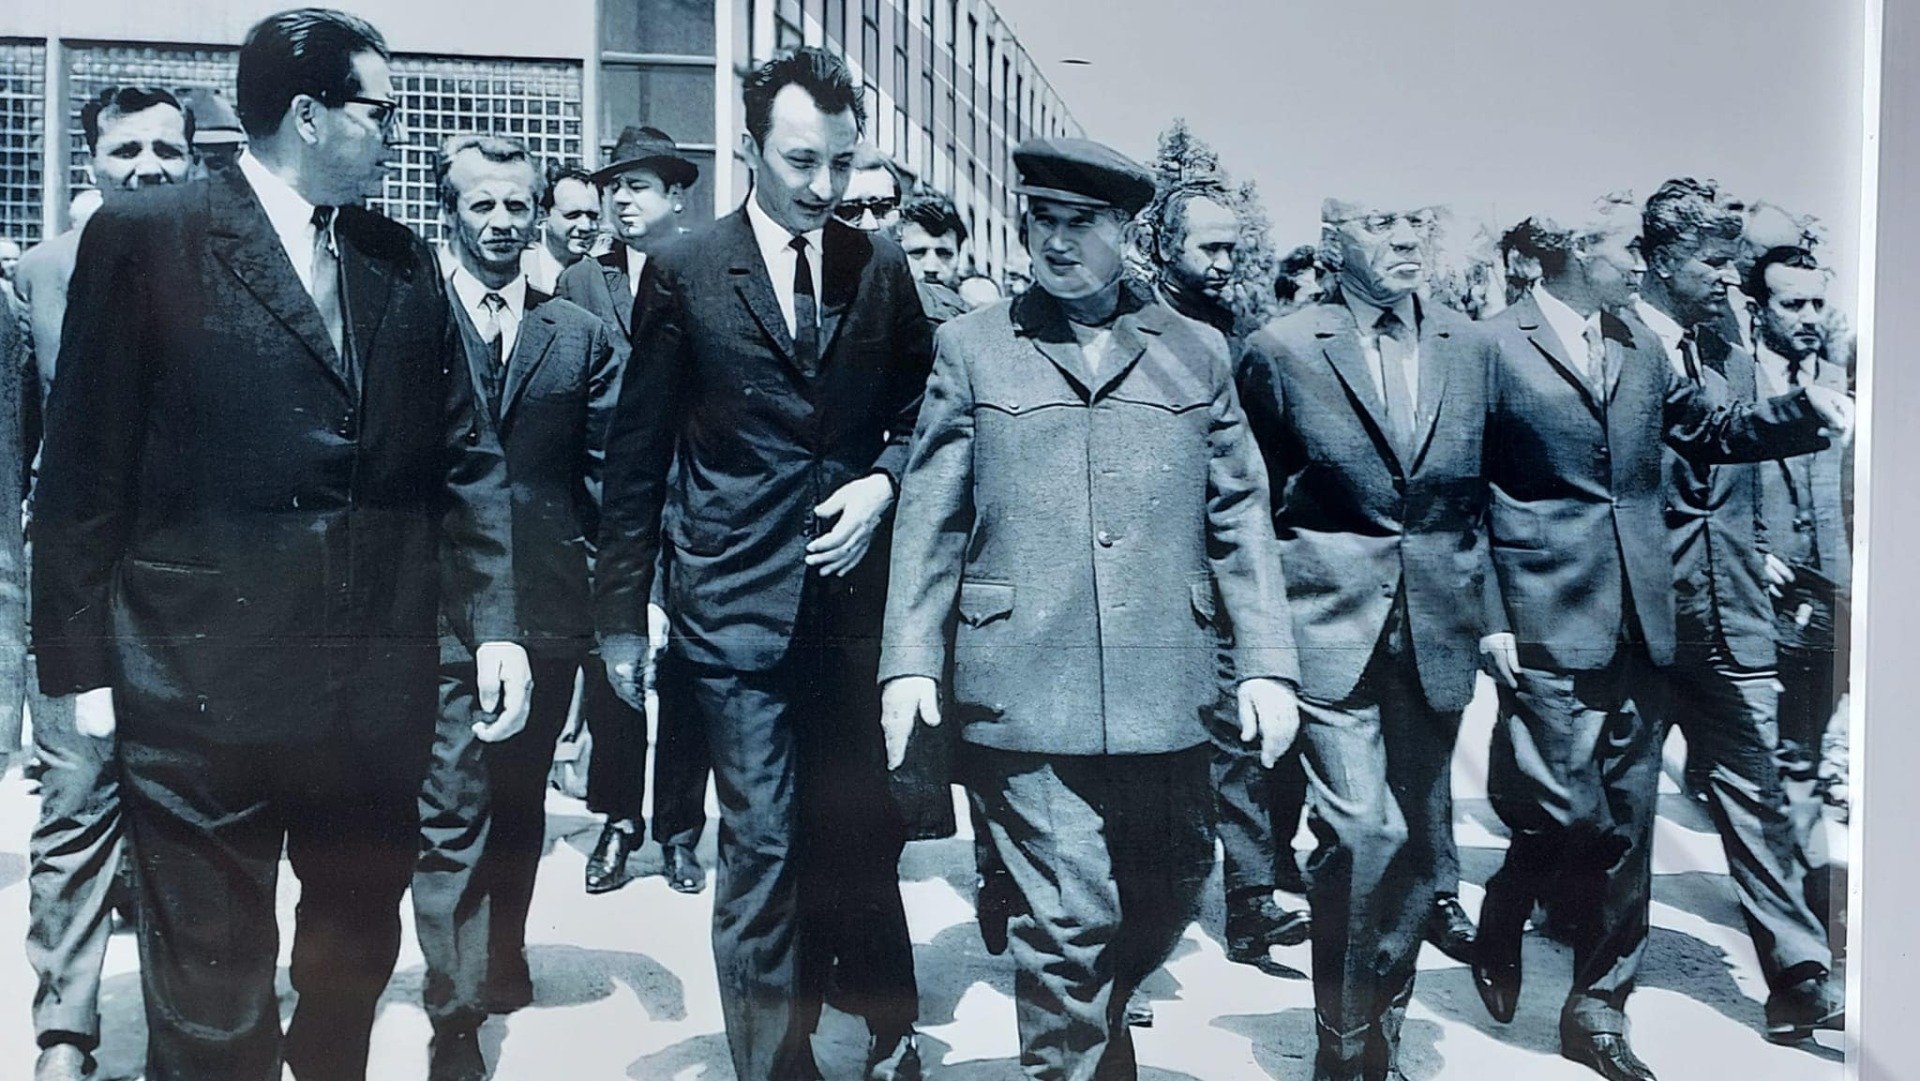  Ciucă, despre imaginile cu Ceauşescu la Buzău: E clar că nu trebuie să avem poze cu dictatori prezentate public